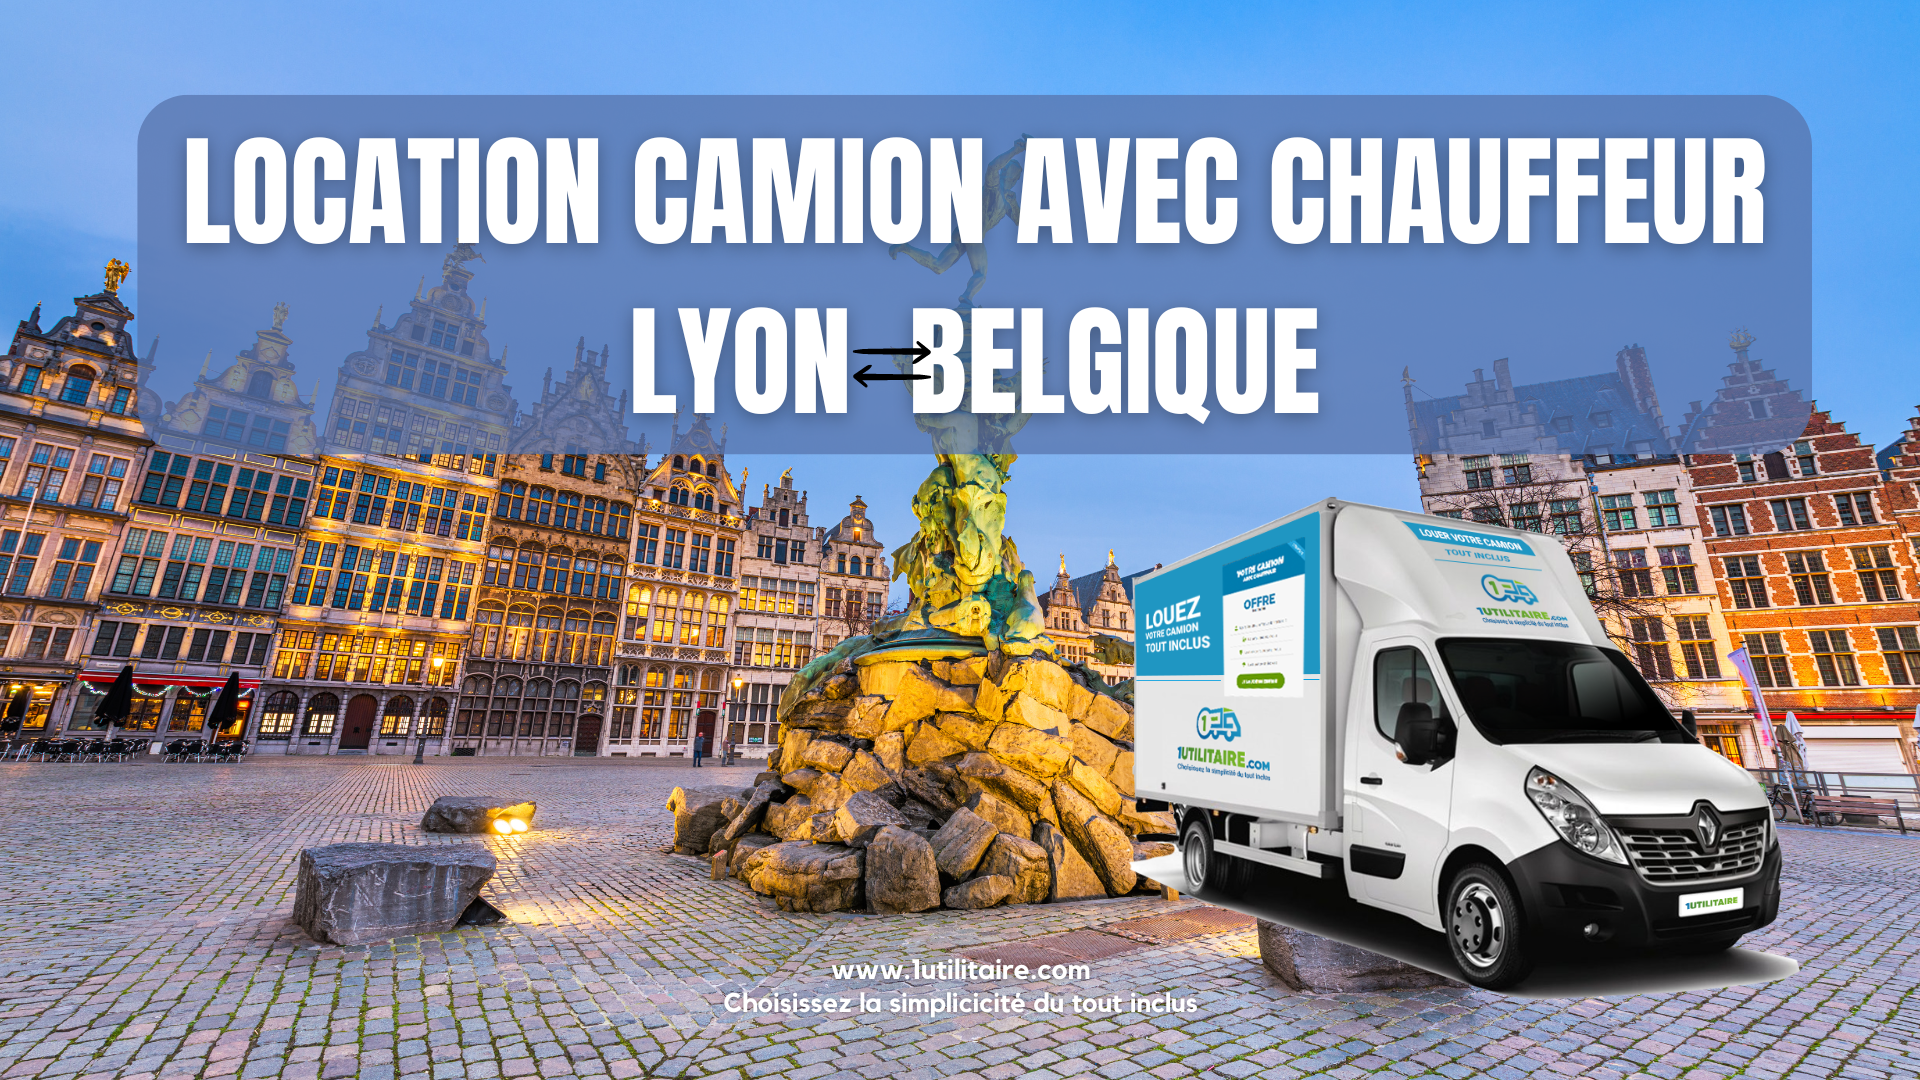 Location camion avec chauffeur Lyon - Belgique